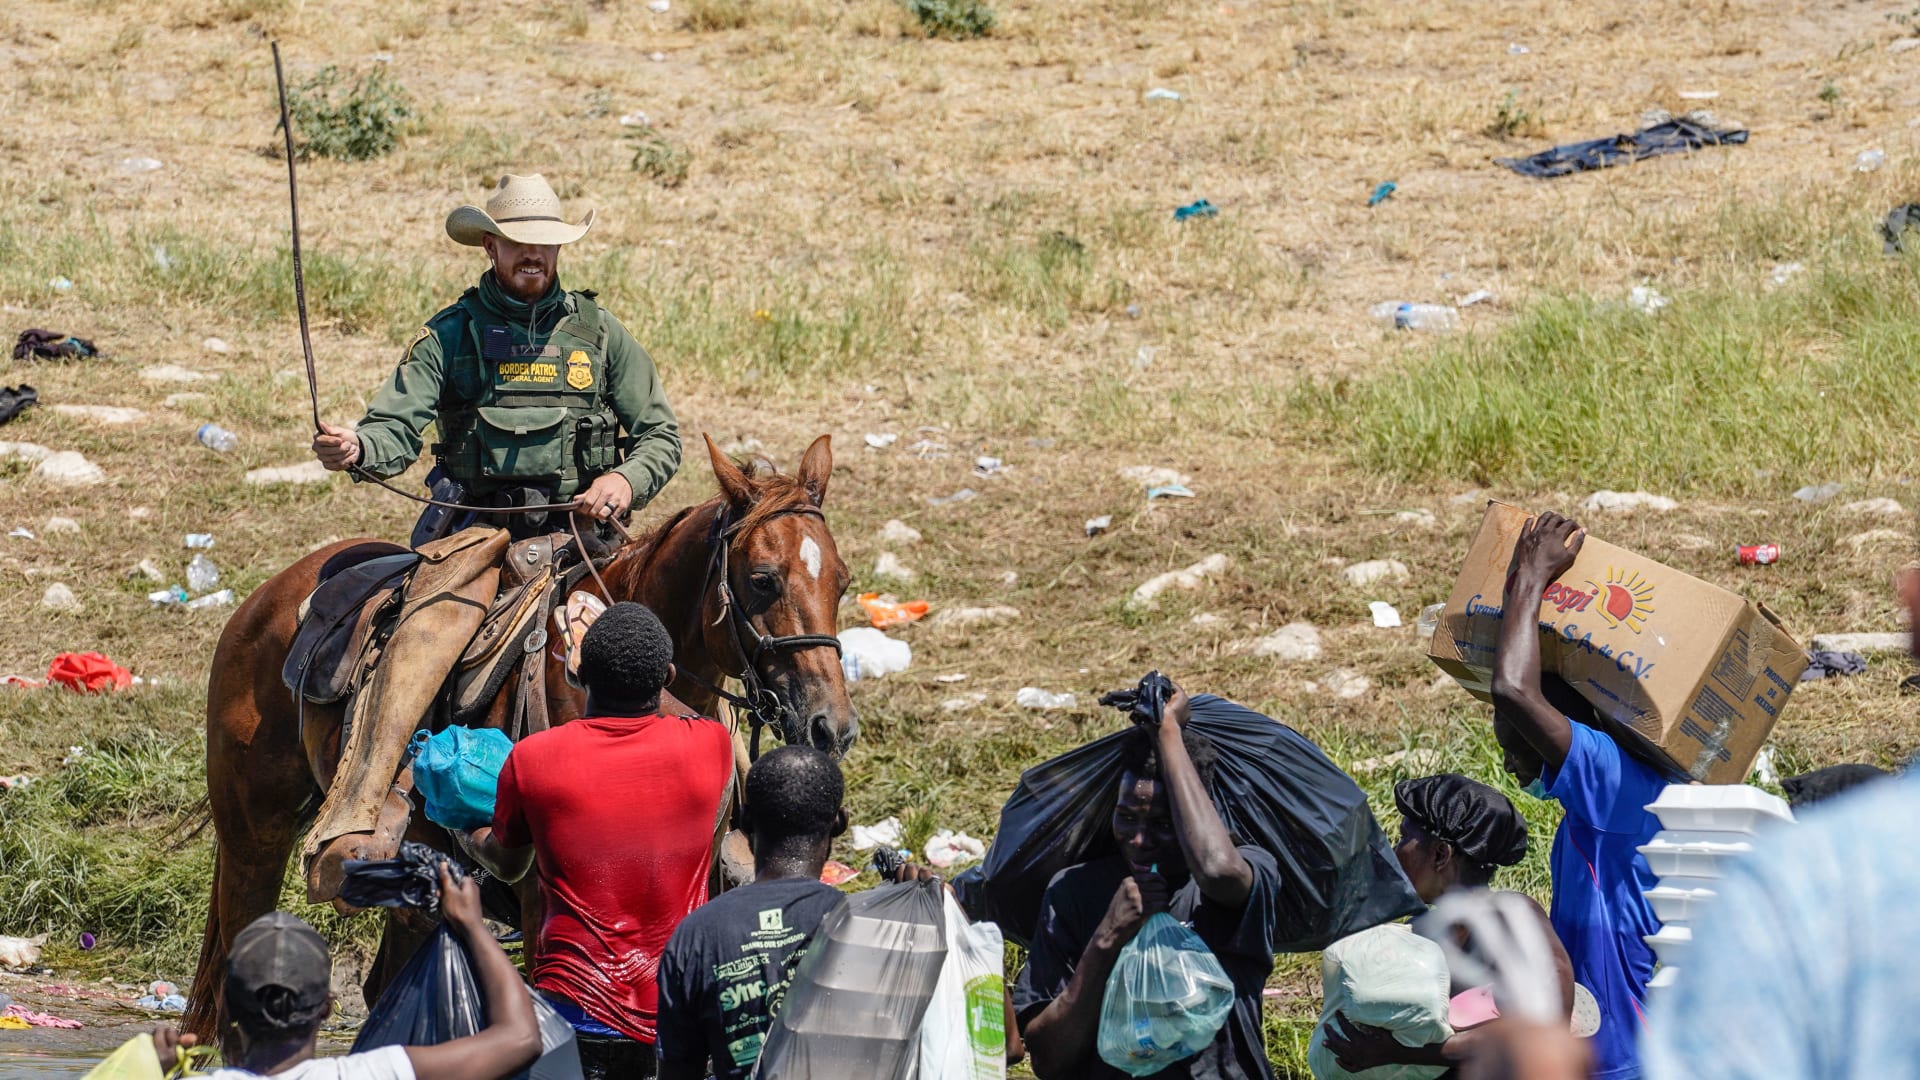   دوريات الحدود بالولايات المتحدة على ظهور الخيل في مواجهة المهاجرين الهايتيين على ضفاف نهر ريو غراندي بولاية تكساس - 19 سبتمبر 2021.